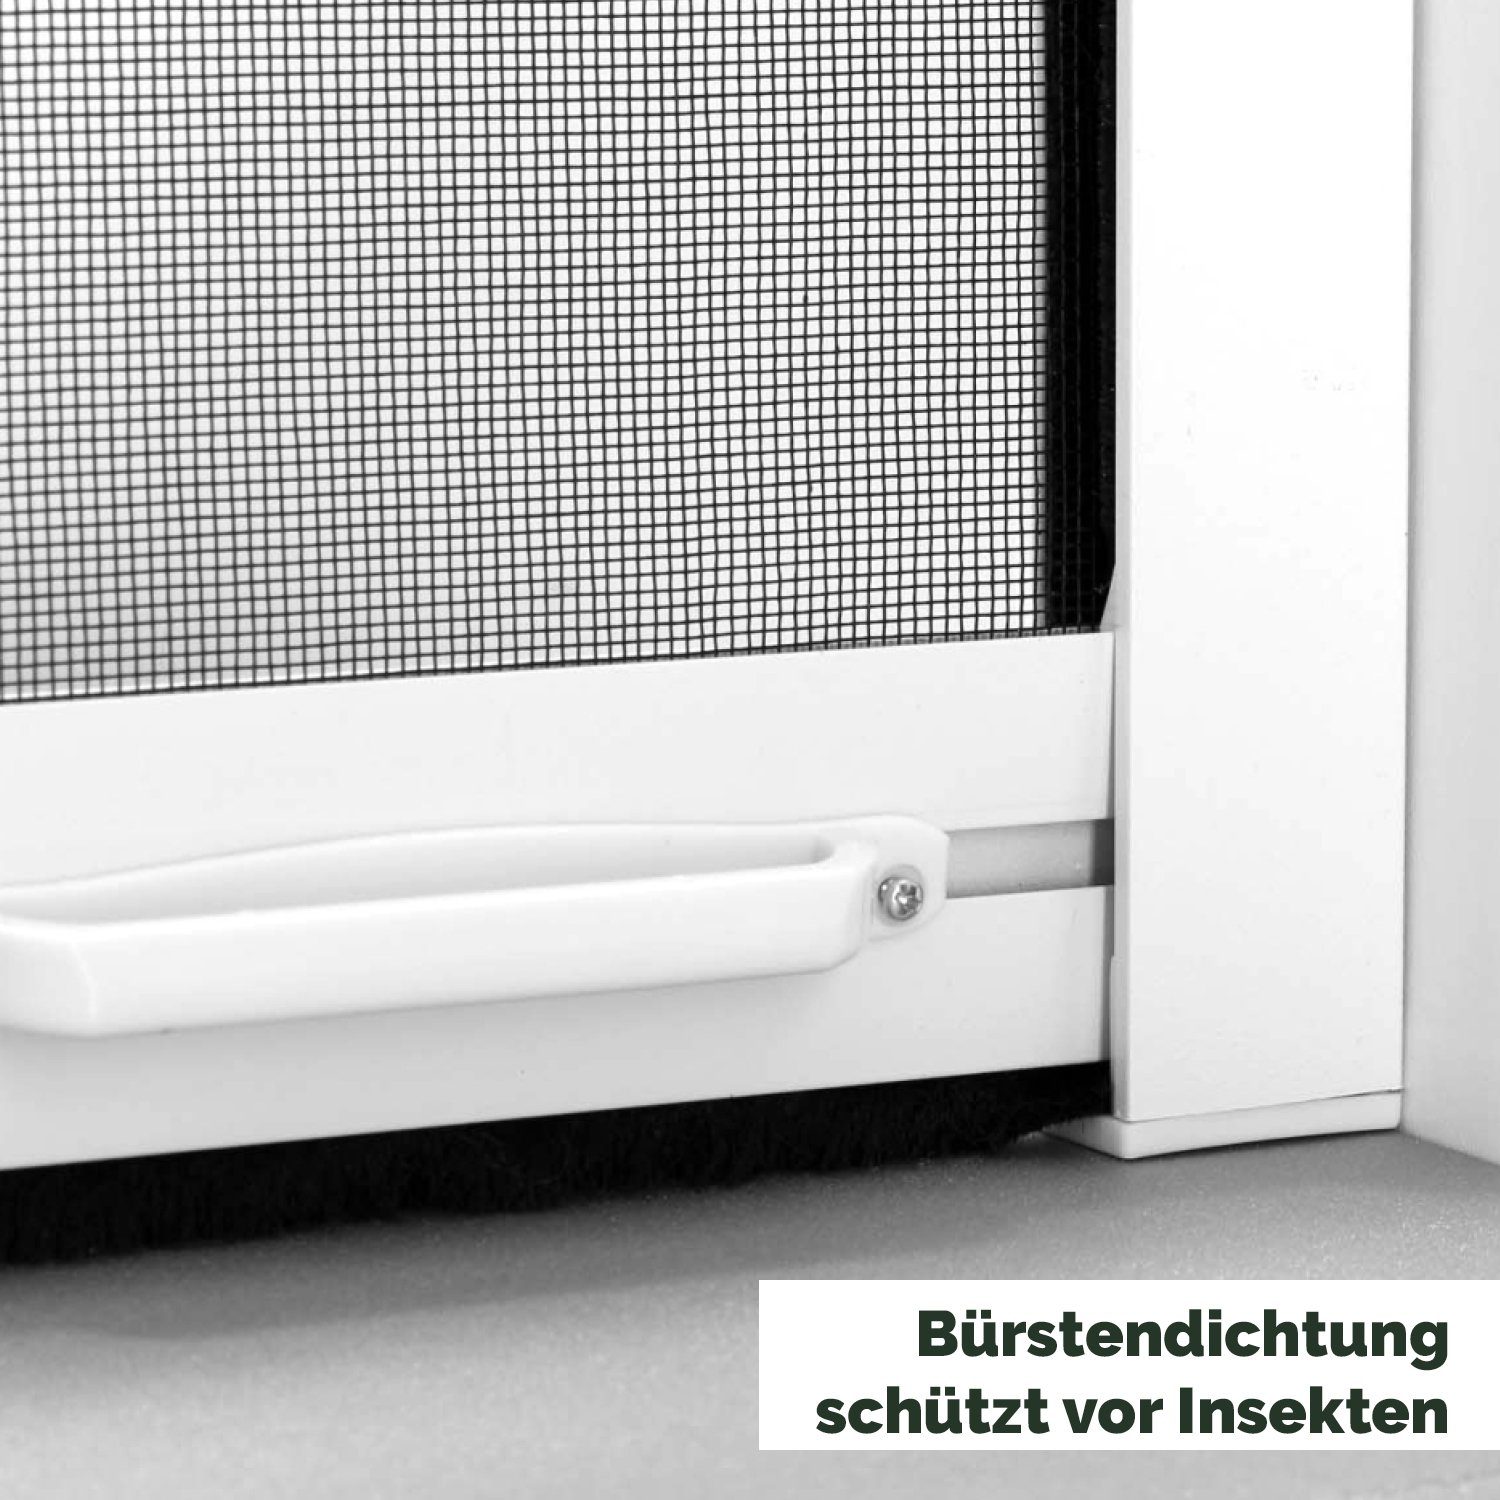 Insektenschutz-Tür mit Weiß Nematek Nematek® Rollo Insektenschutz-Rollo - Aluminium für Fliegengitter Mückenschutz Alu Fenster Rahmen